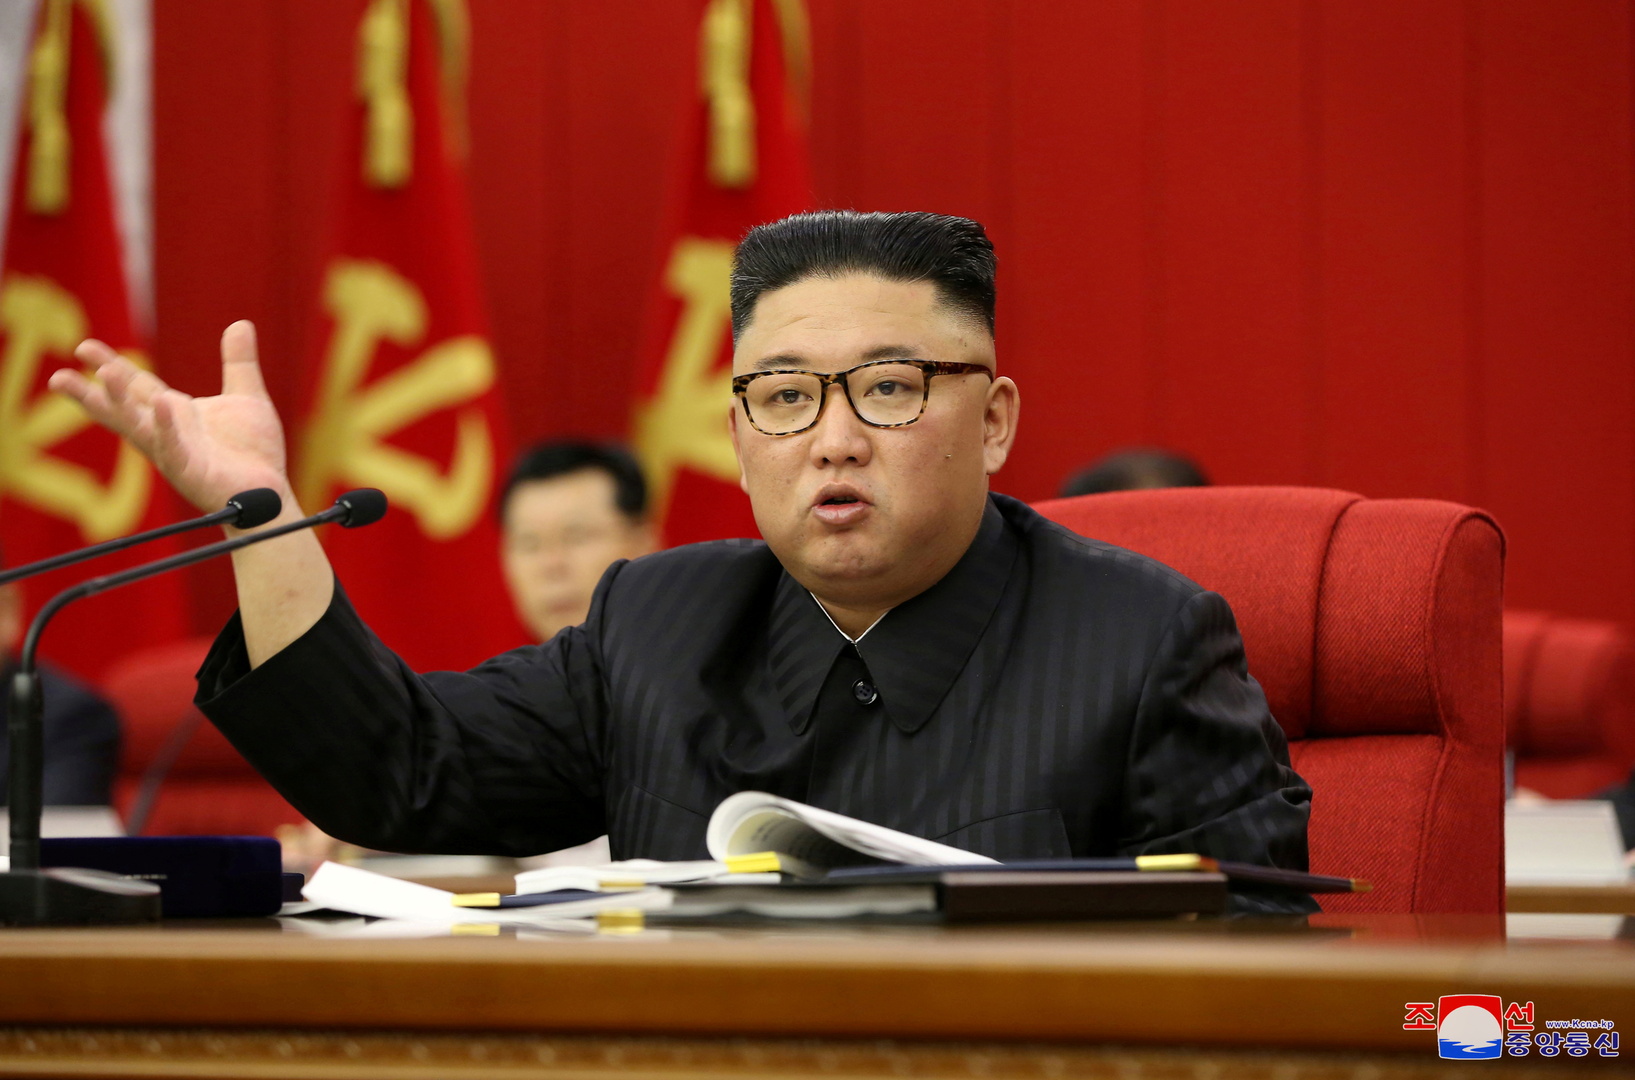 كوريا الشمالية تنتقد التقرير السنوي لوزارة الدفاع اليابانية